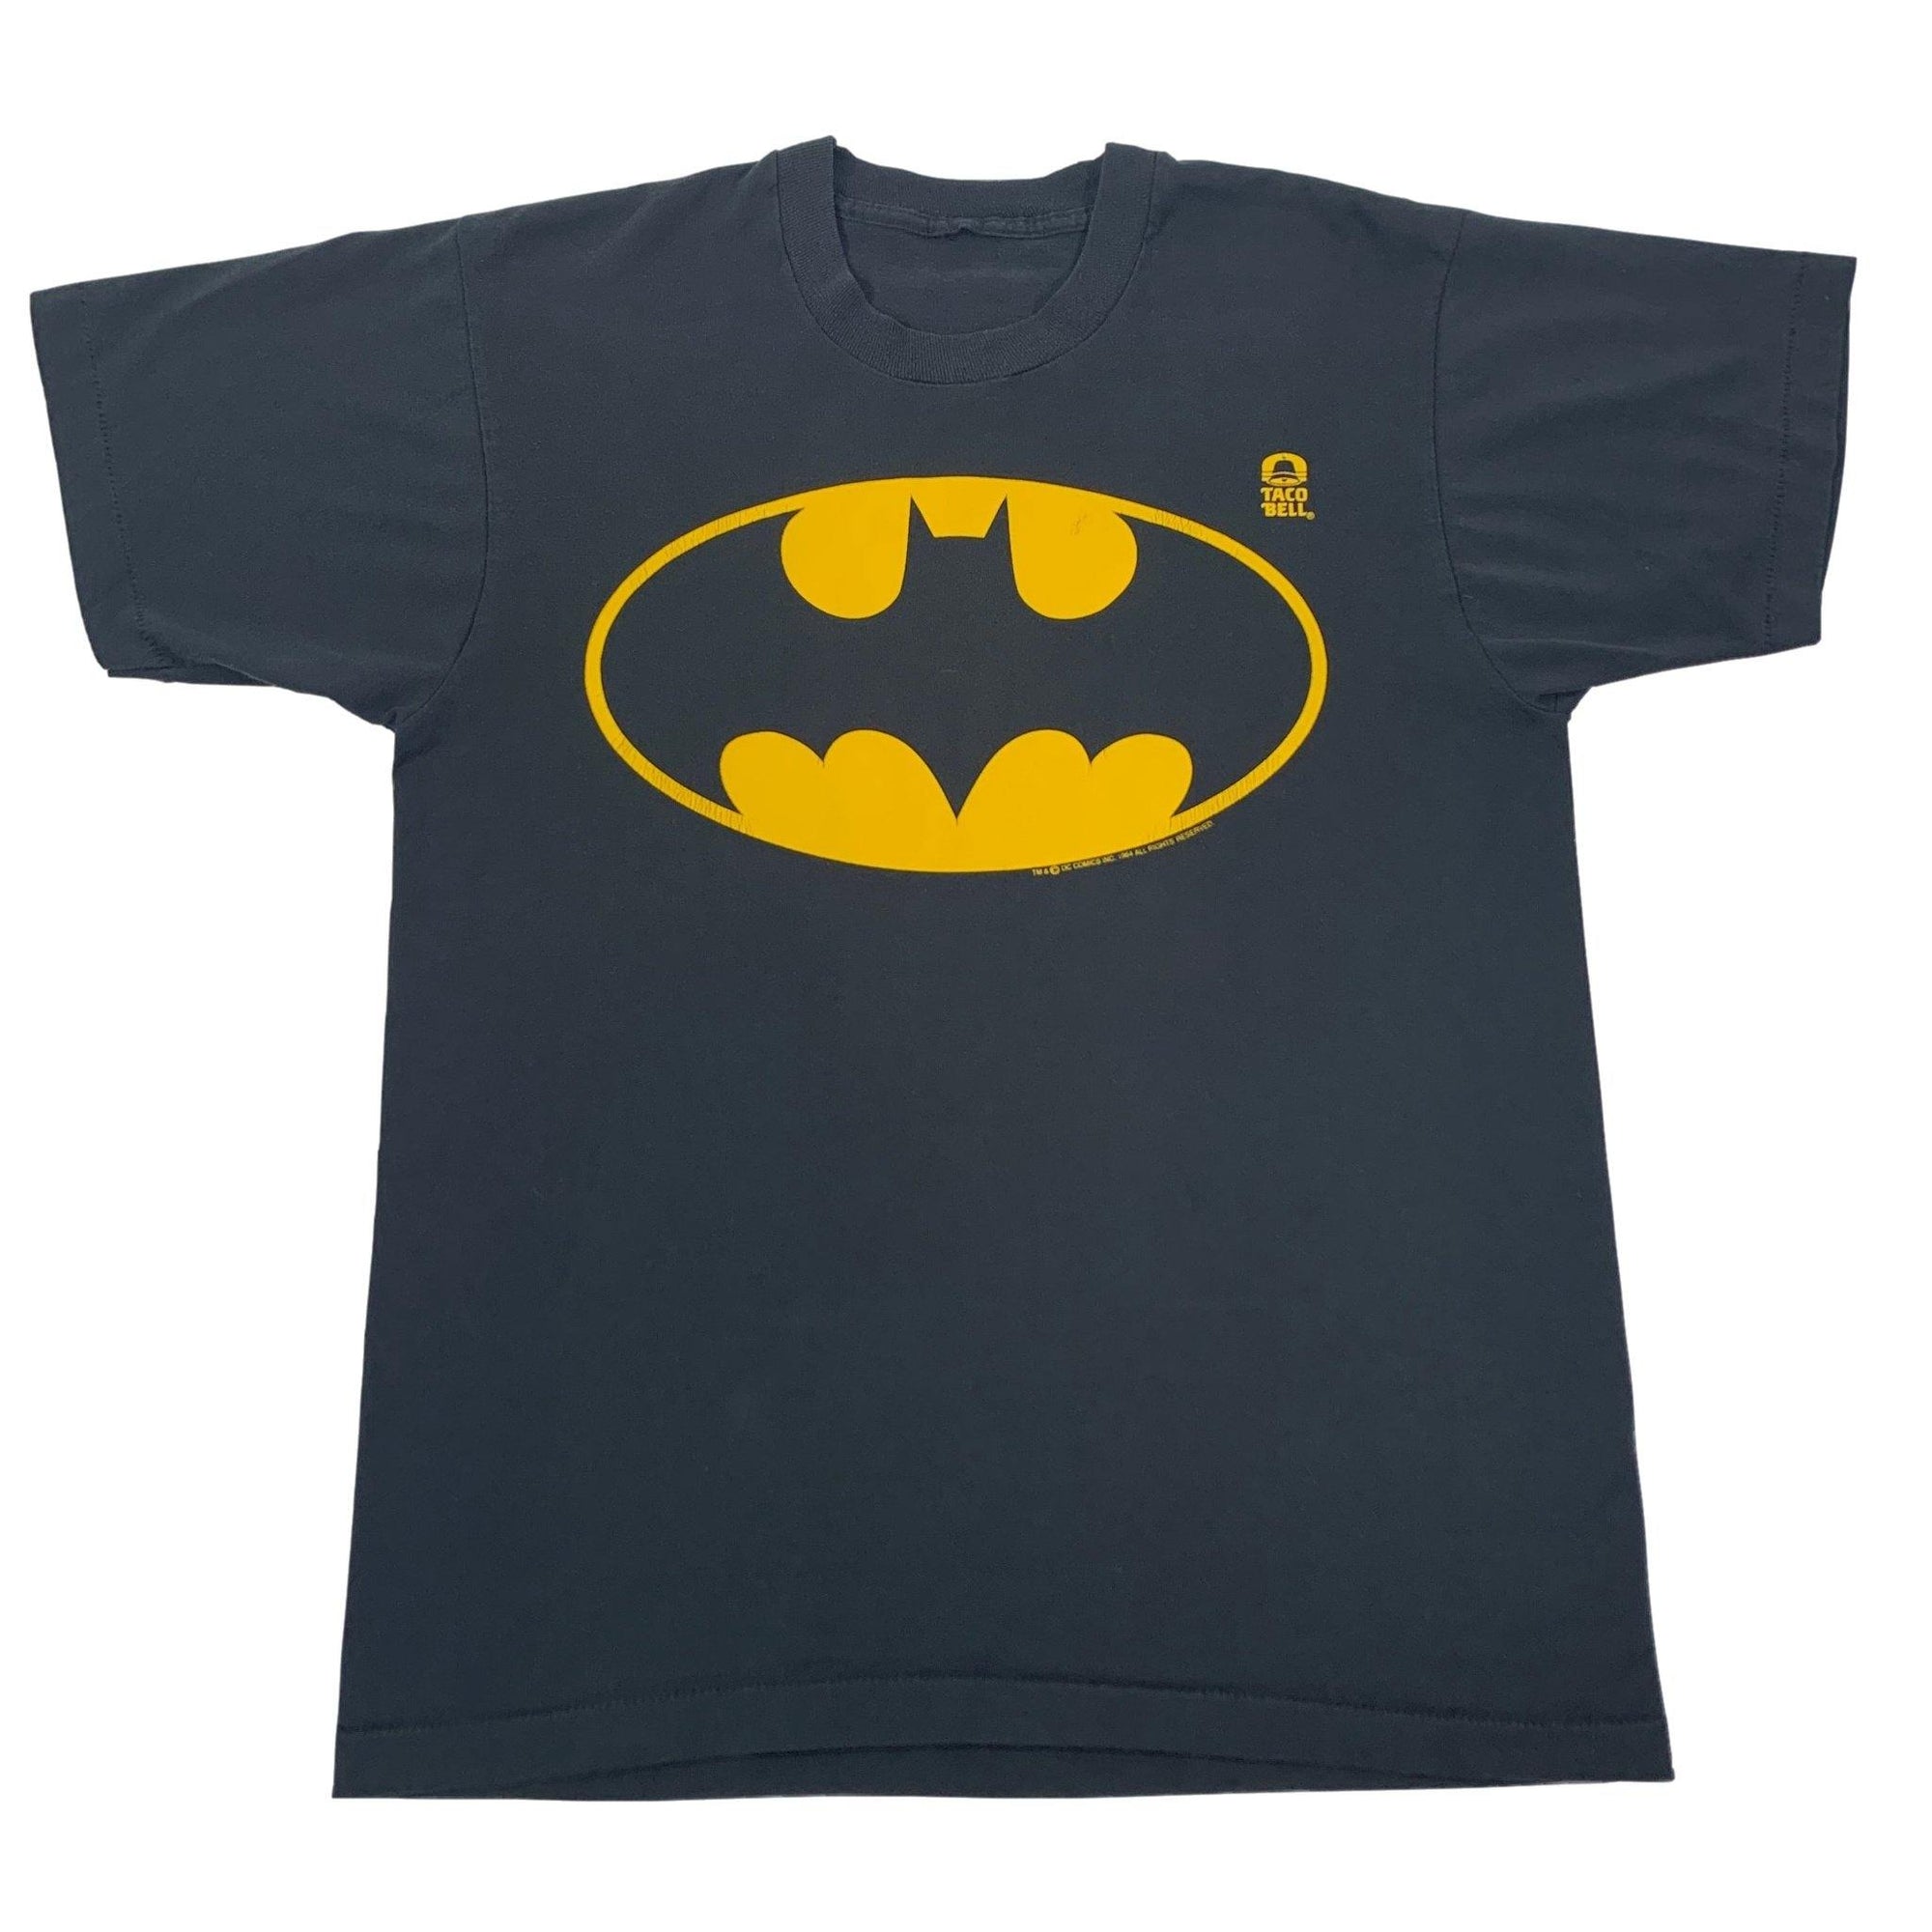 Vintage Batman "Taco Bell" T-Shirt - jointcustodydc